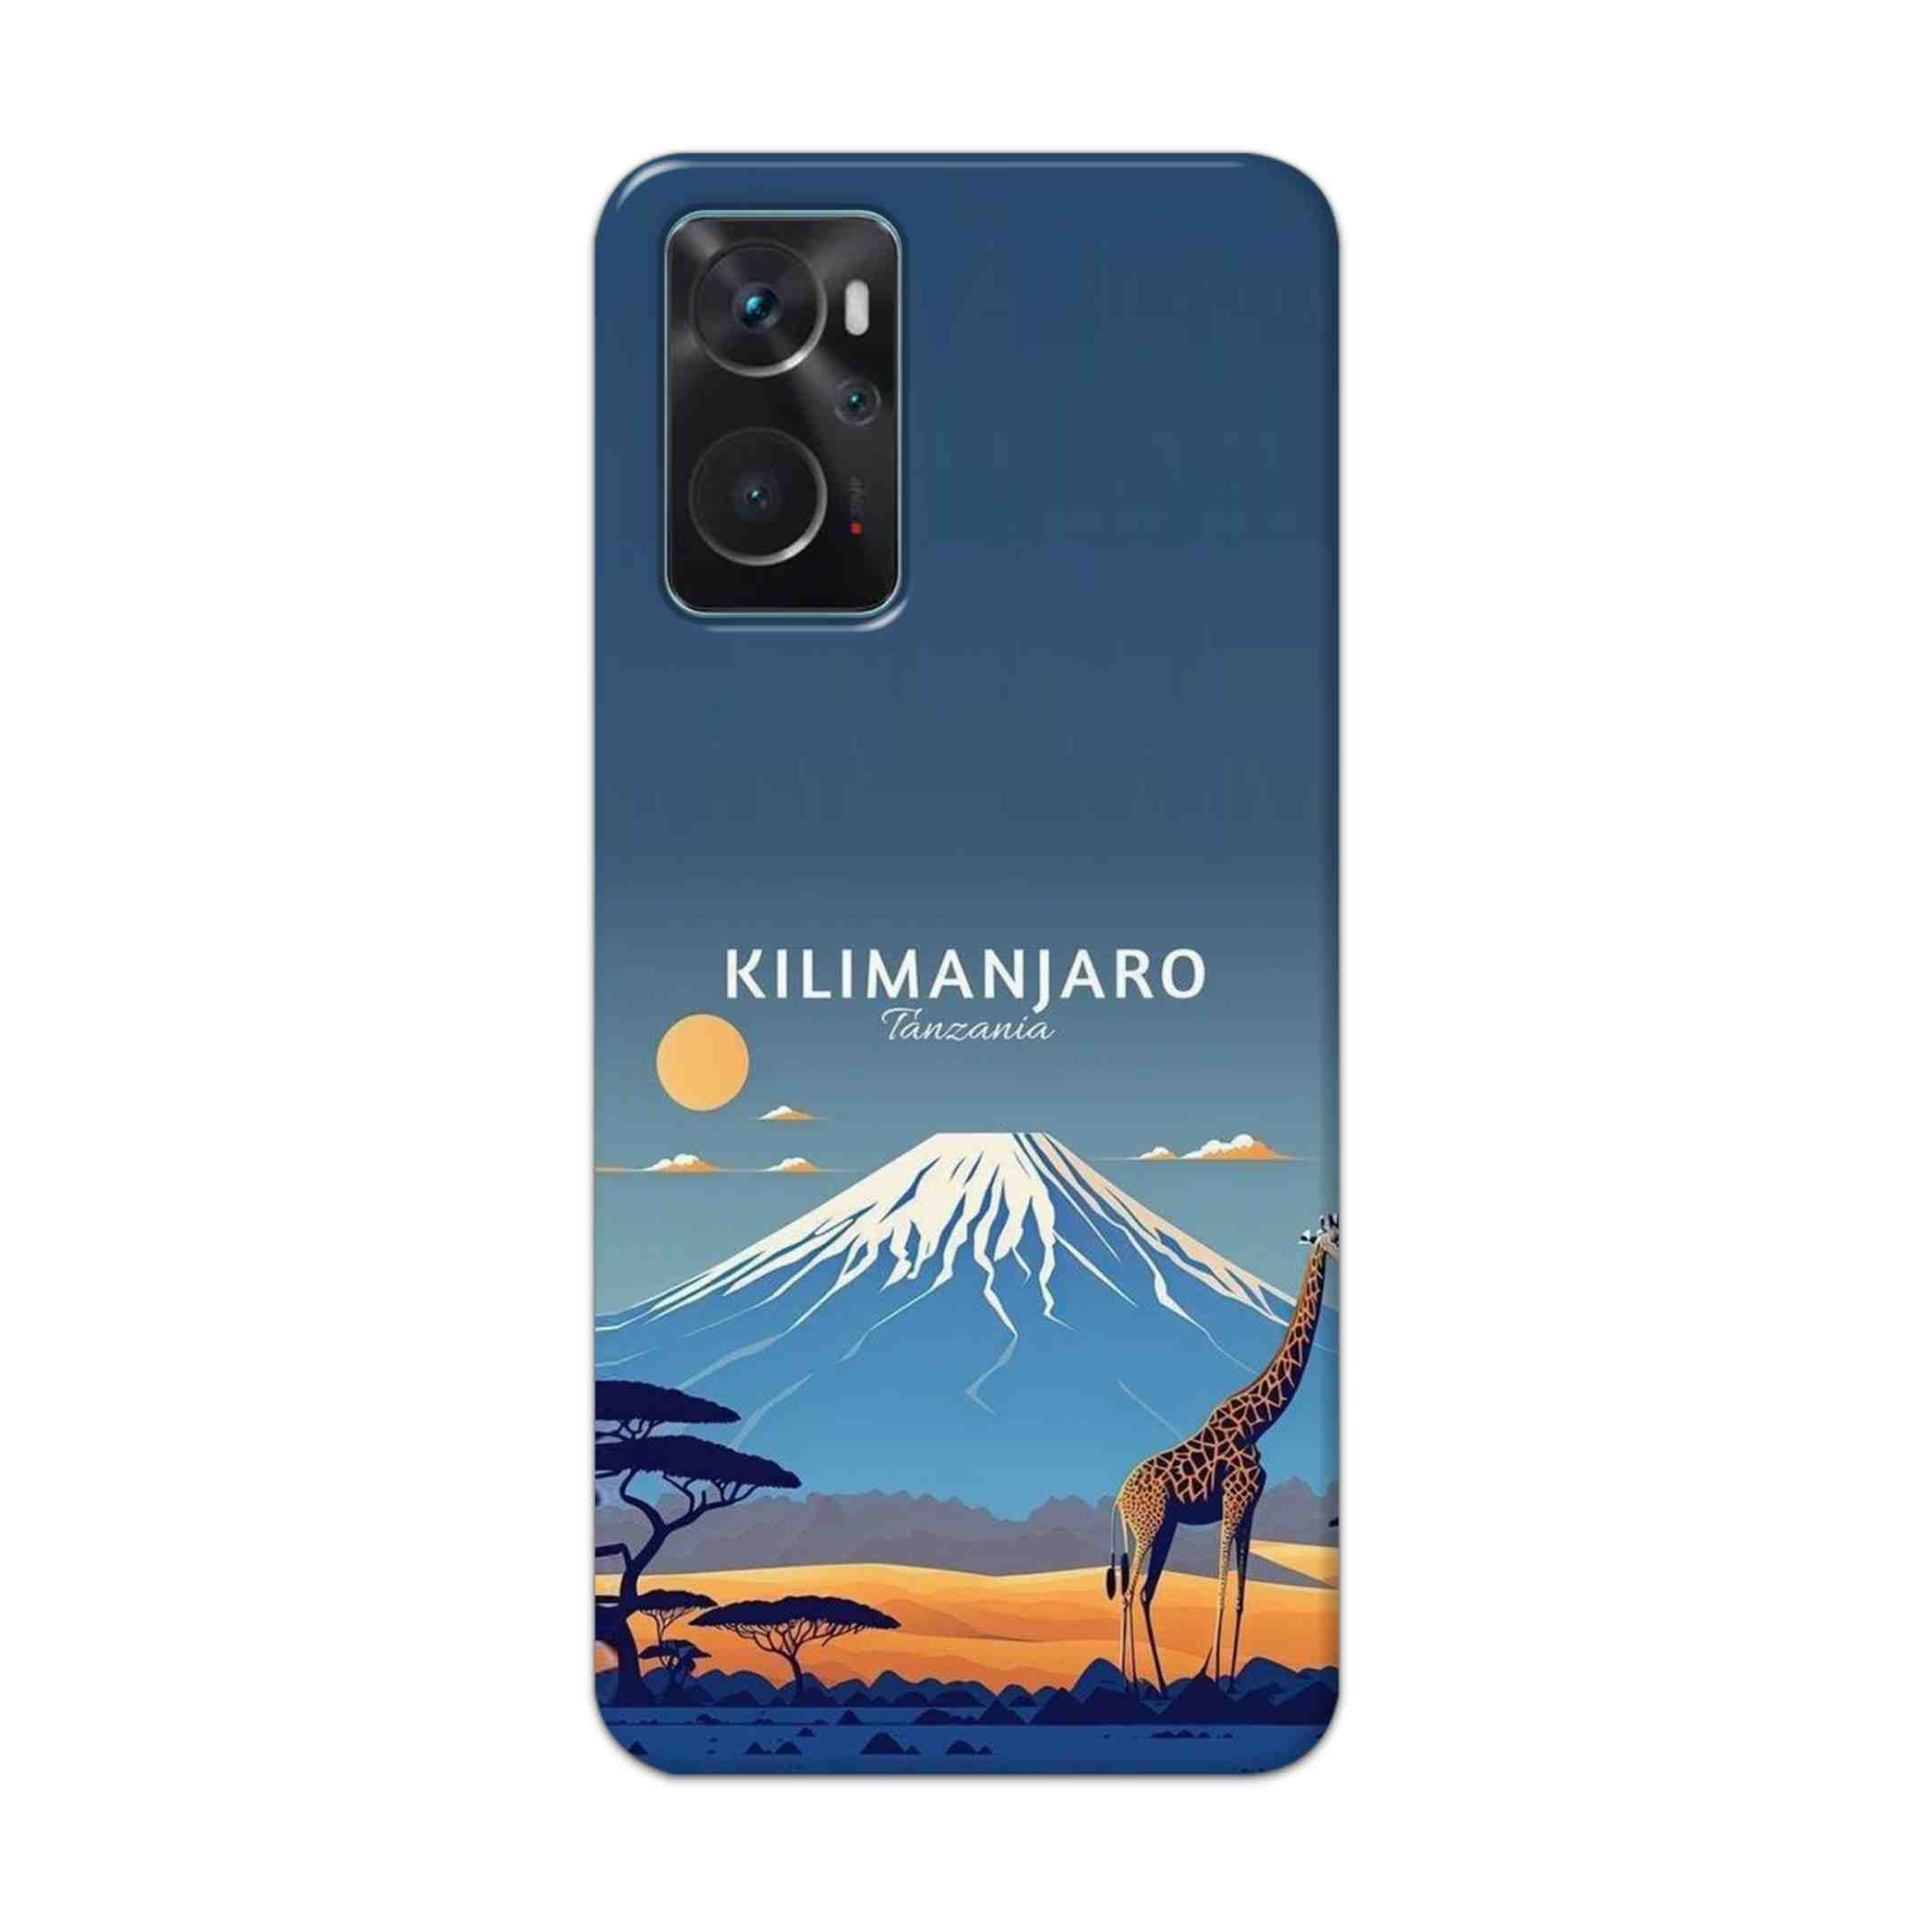 Buy Kilimanjaro Hard Back Mobile Phone Case Cover For Oppo K10 Online